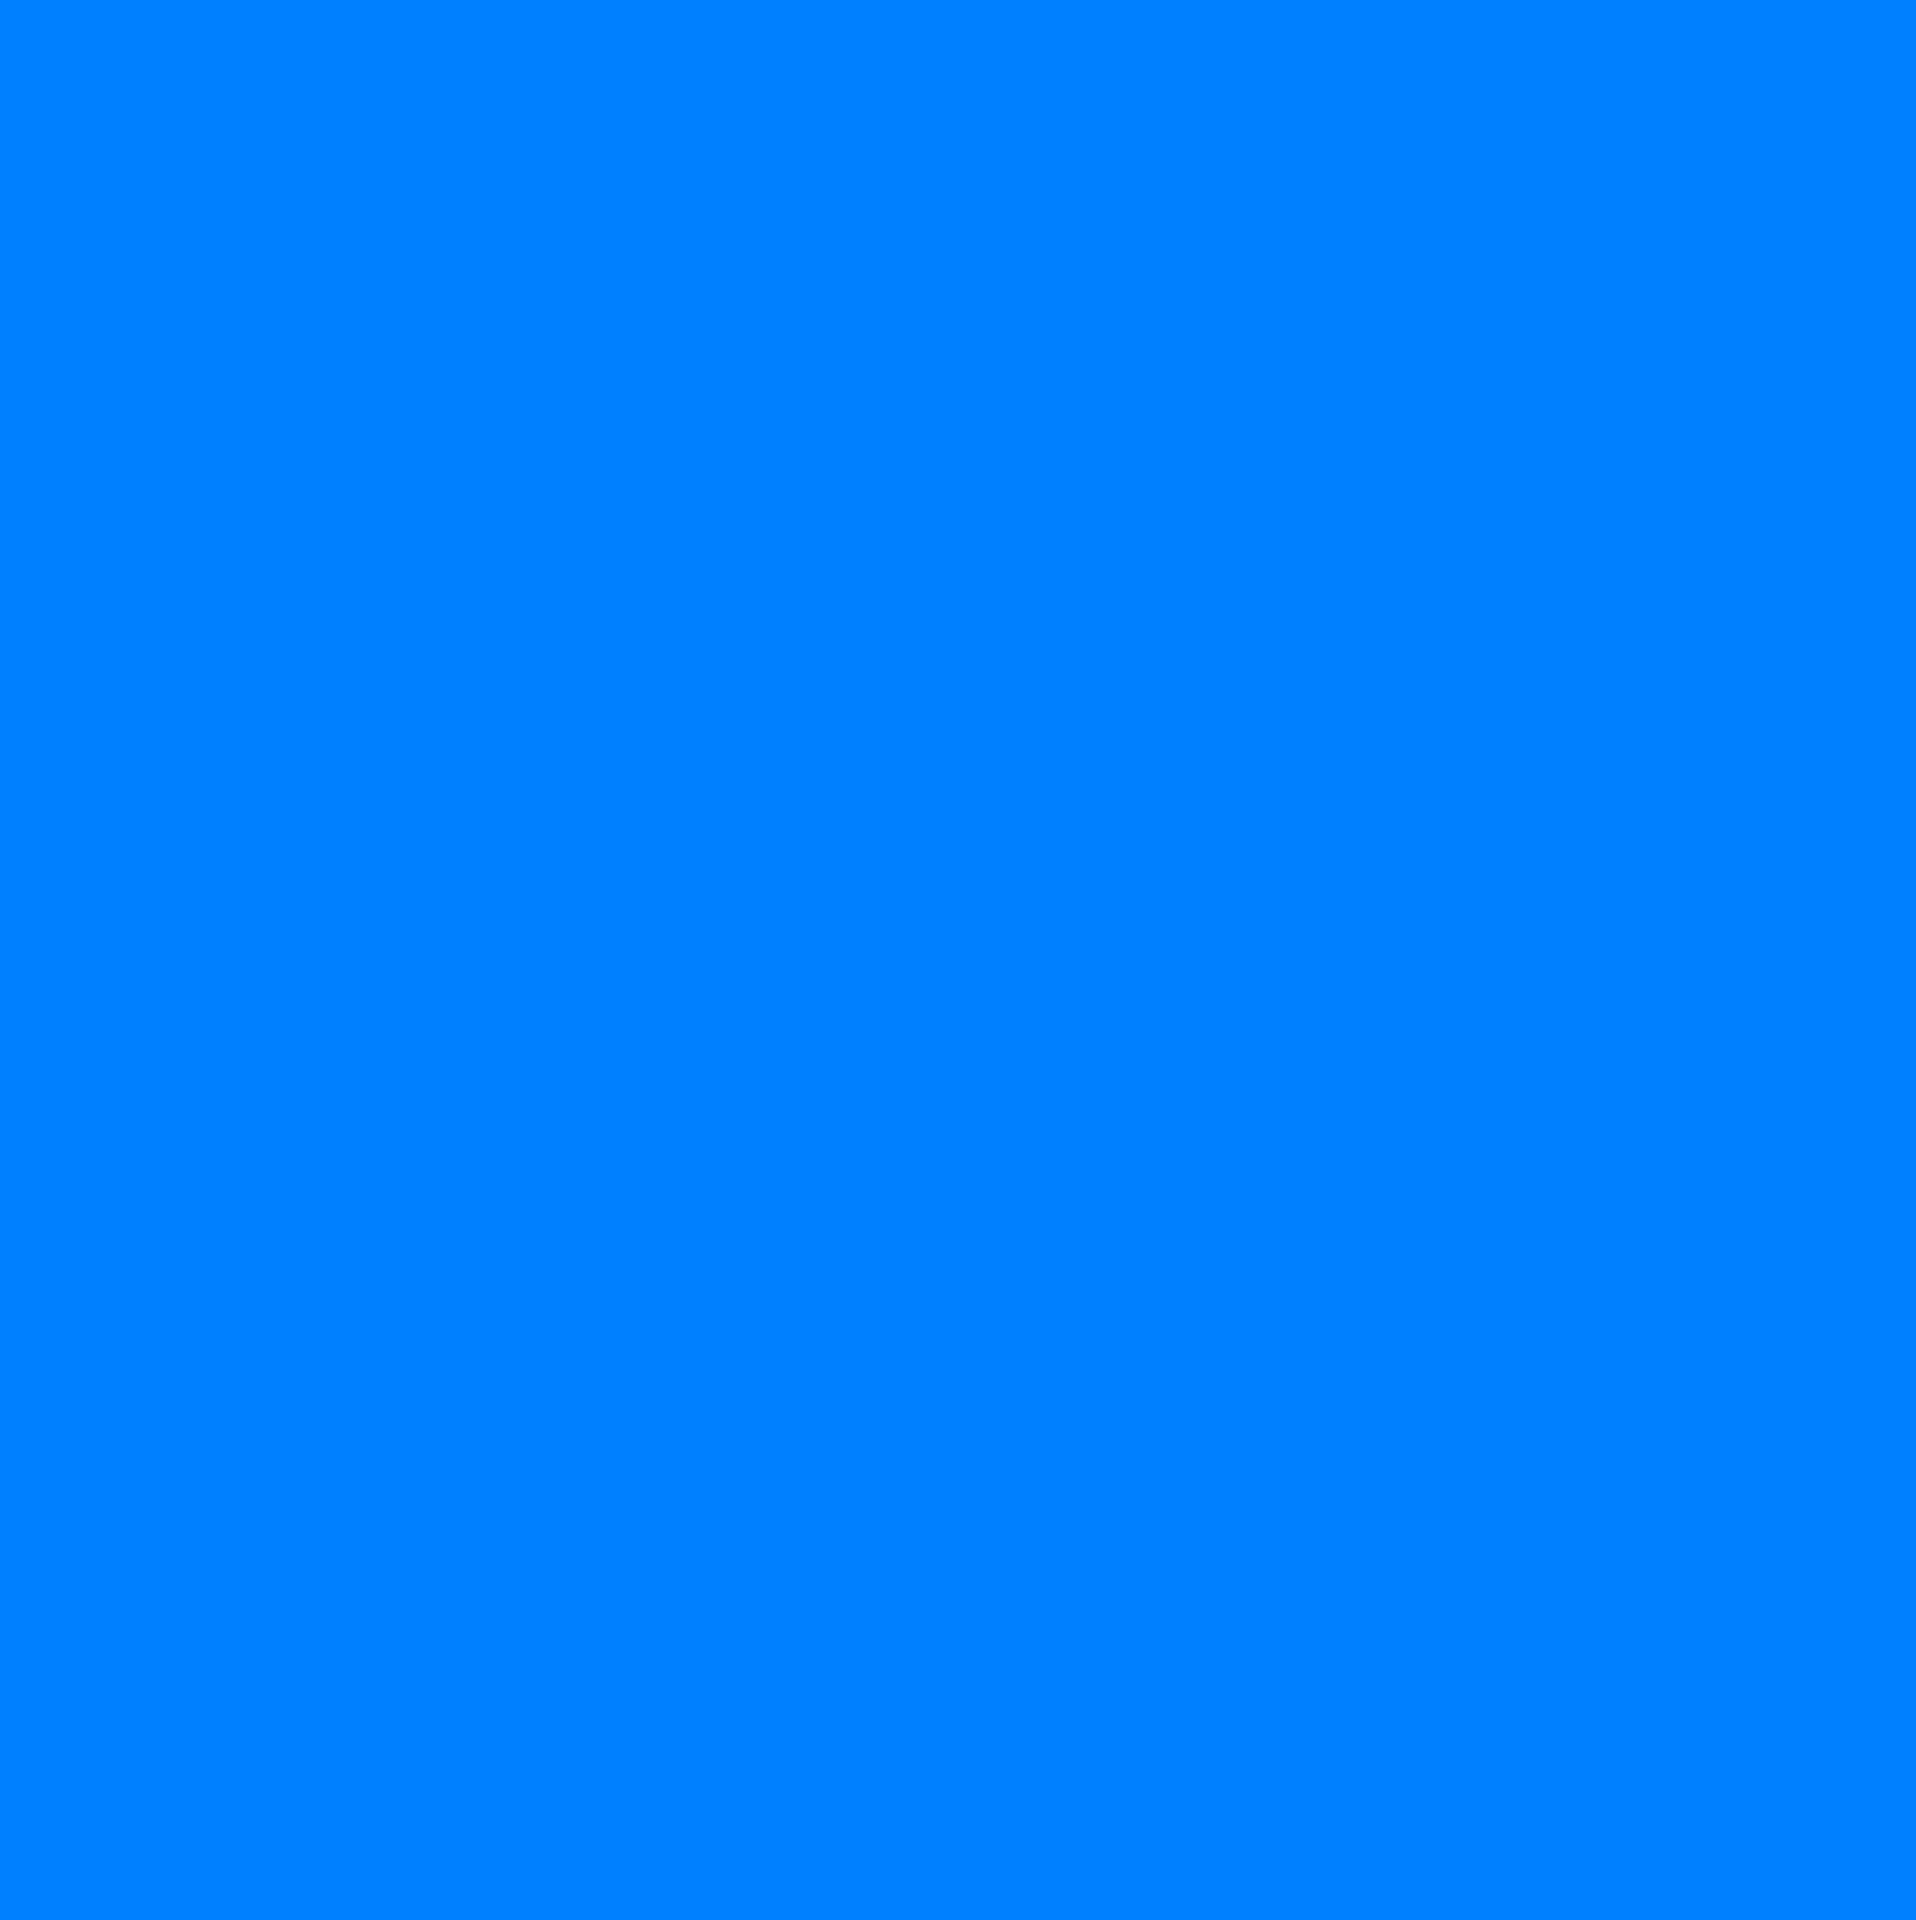 Hình nền xanh dương là một sự lựa chọn tuyệt vời để làm hình nền điện thoại hoặc máy tính của bạn. Với sắc màu trong trẻo và sự tươi mới, hình nền xanh dương sẽ mang lại cho bạn cảm giác thư thái và sạch sẽ khi lướt qua màn hình của mình.